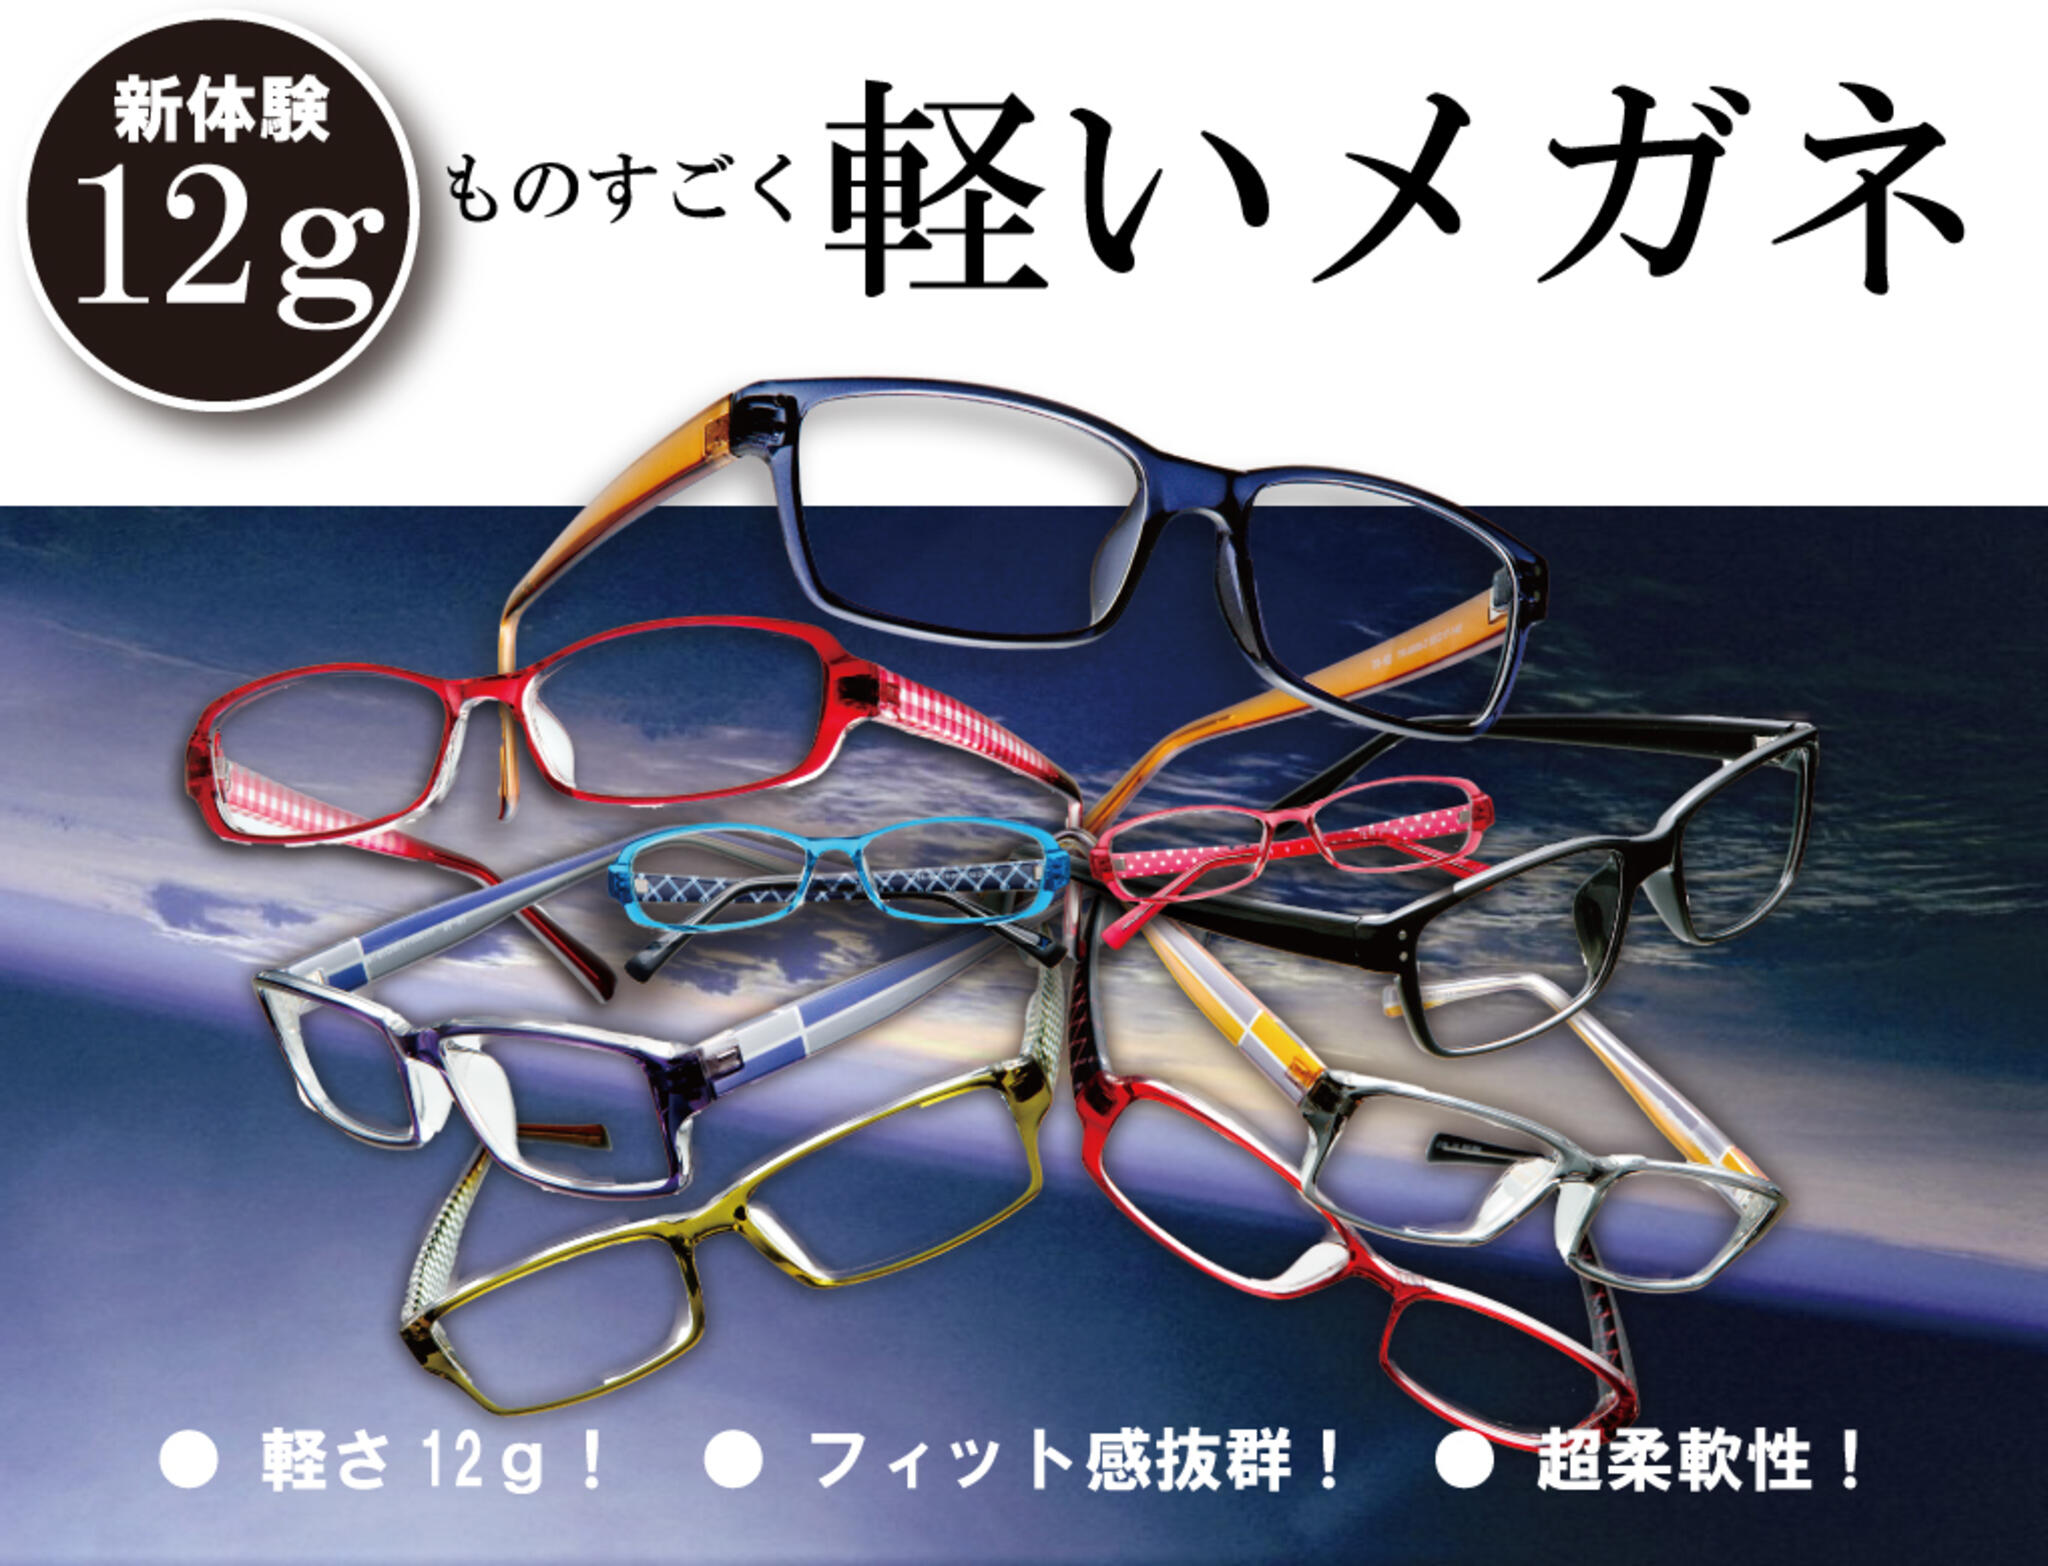 ドクターアイズ 兵庫加古川店からのお知らせ(軽い！メガネはこれがおすすめ！｜新体験の12ｇの真空フレーム)に関する写真